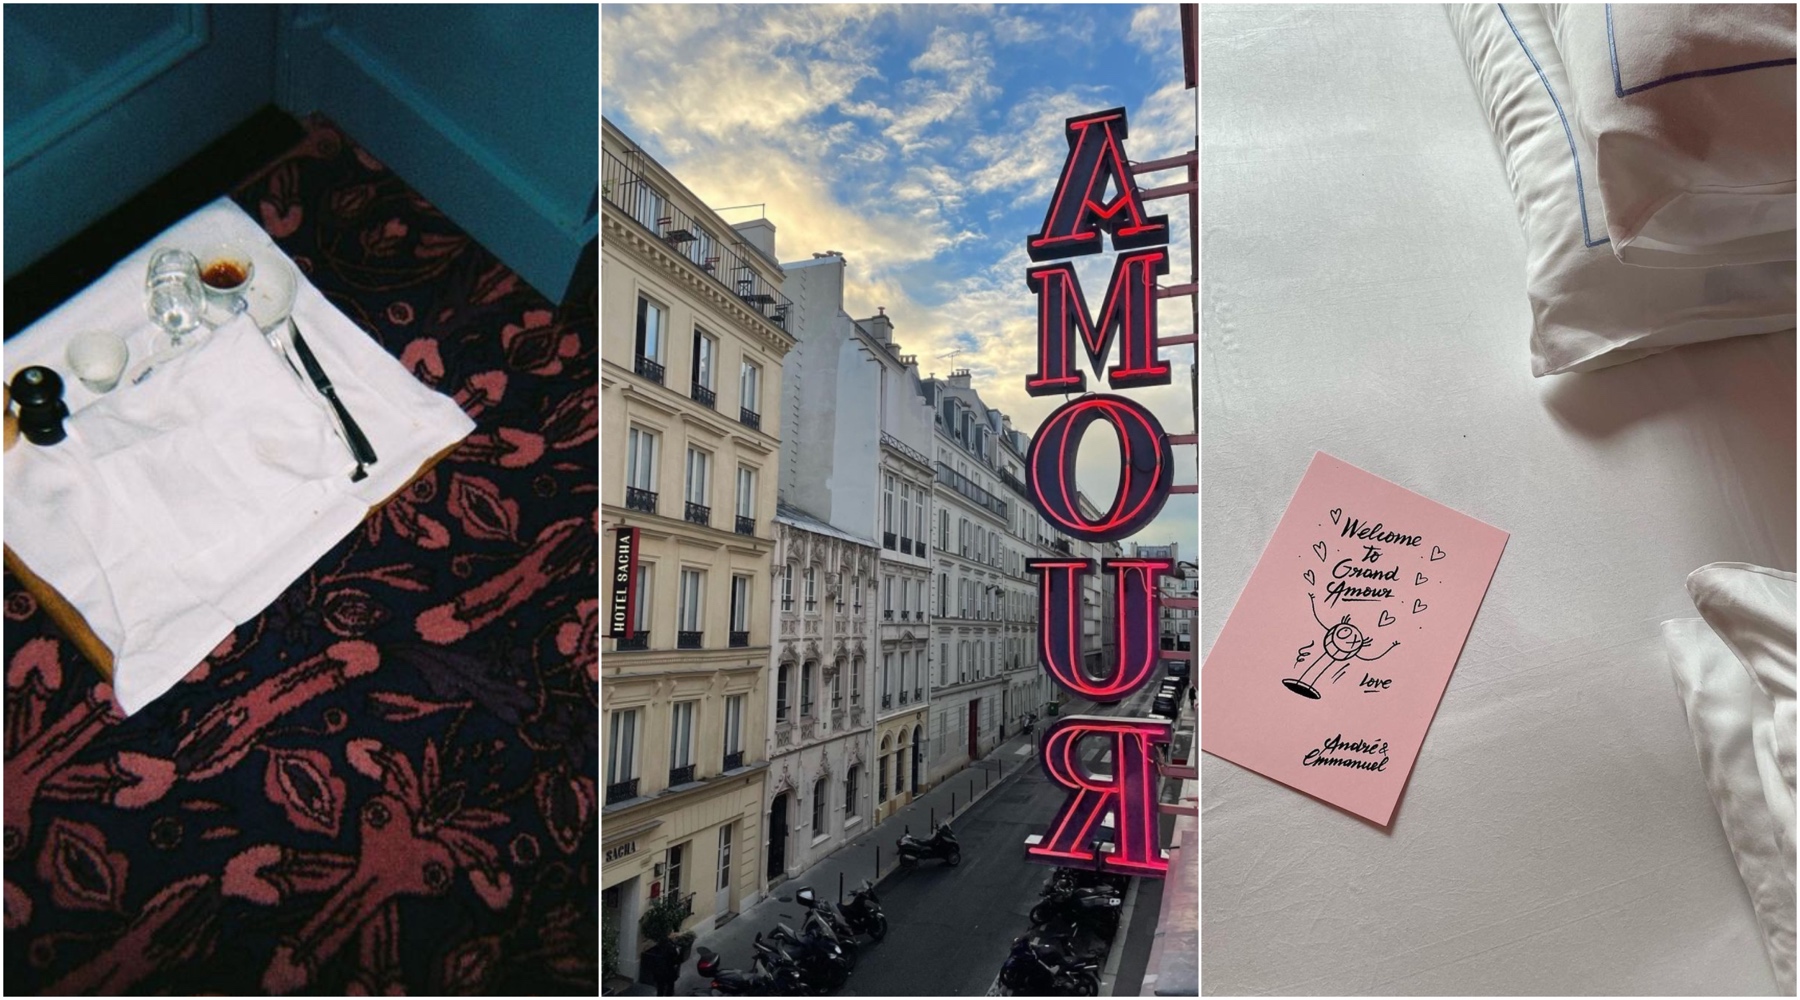 Hotel Amour obavezna je stanica našoj sledećoj poseti Parizu